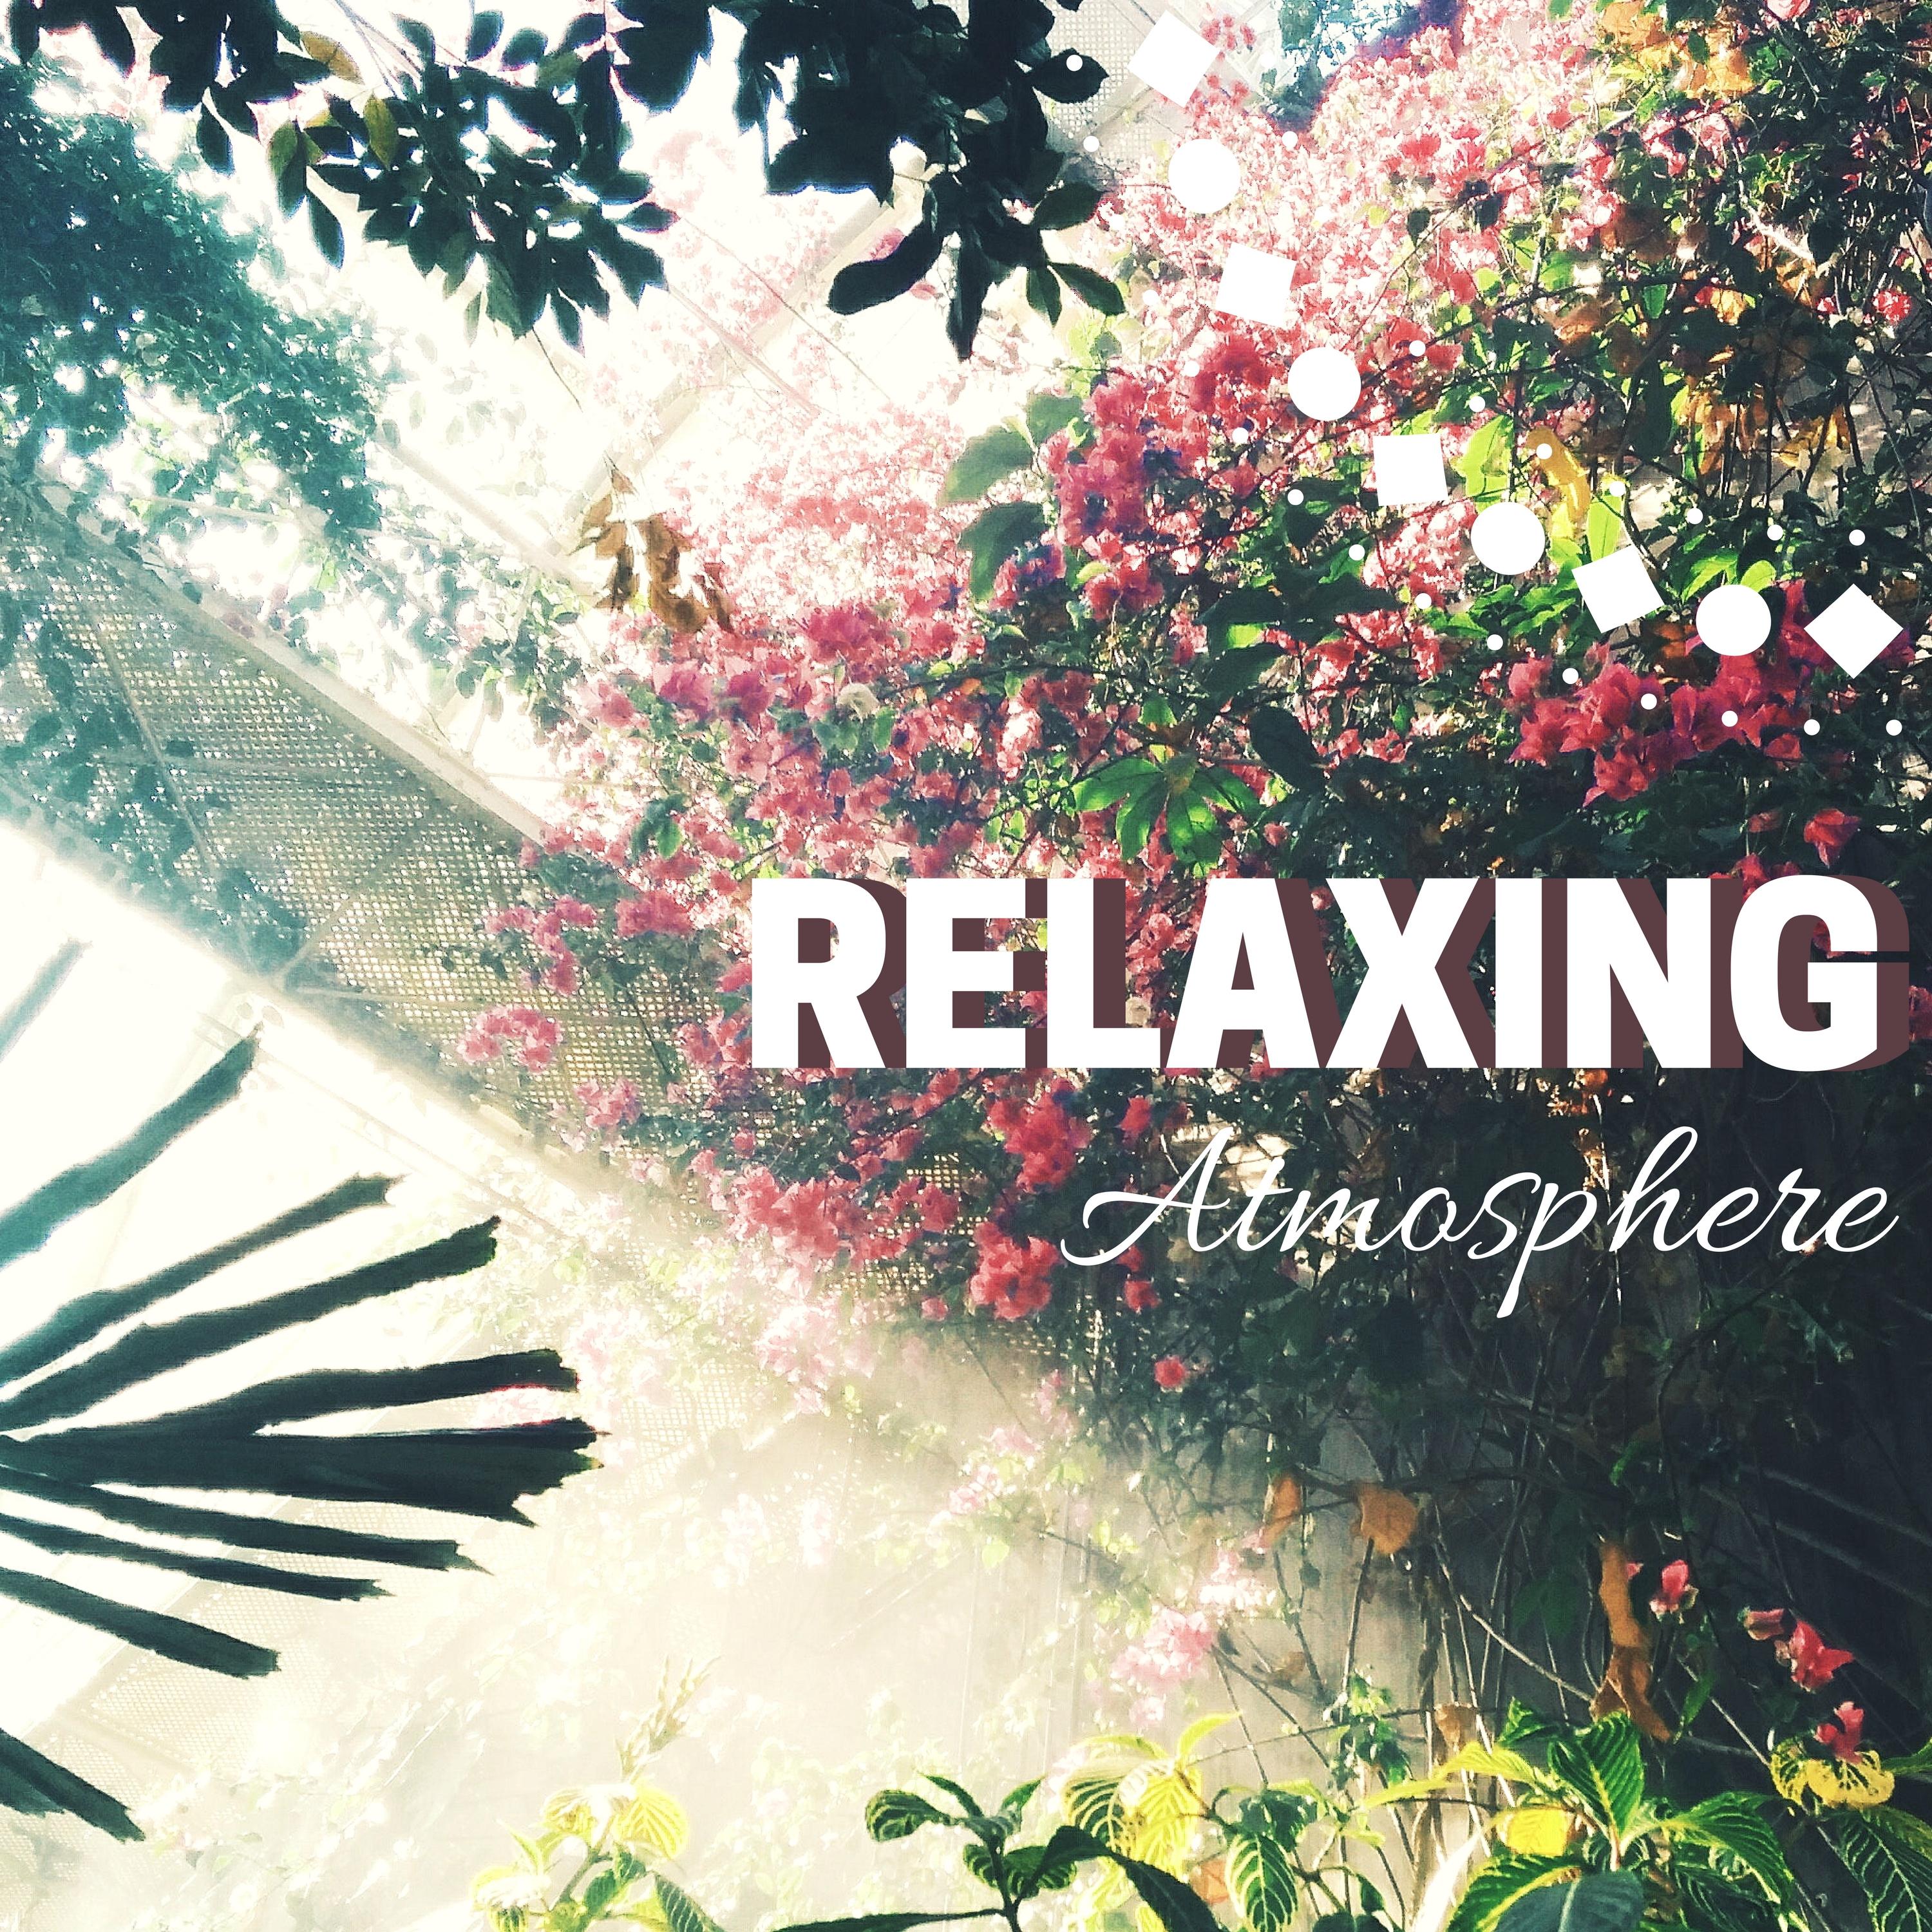 Relaxing Atmosphere